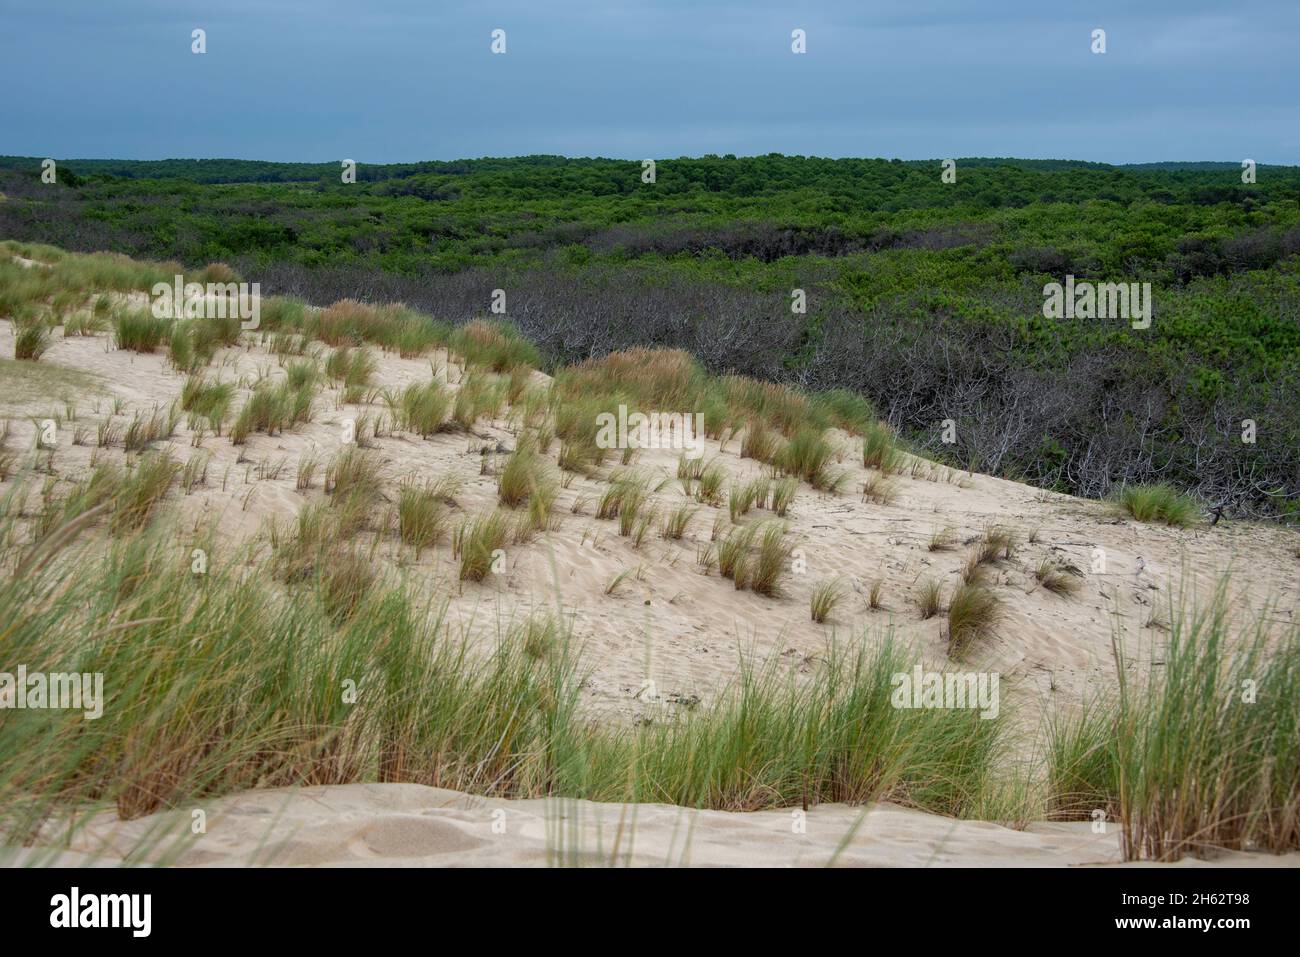 france,novelle-aquitaine,gironda,carcans,dune de sable sur la plage de carcans plage,derrière elle une vaste forêt de pins, côte atlantique, golfe de gascogne Banque D'Images